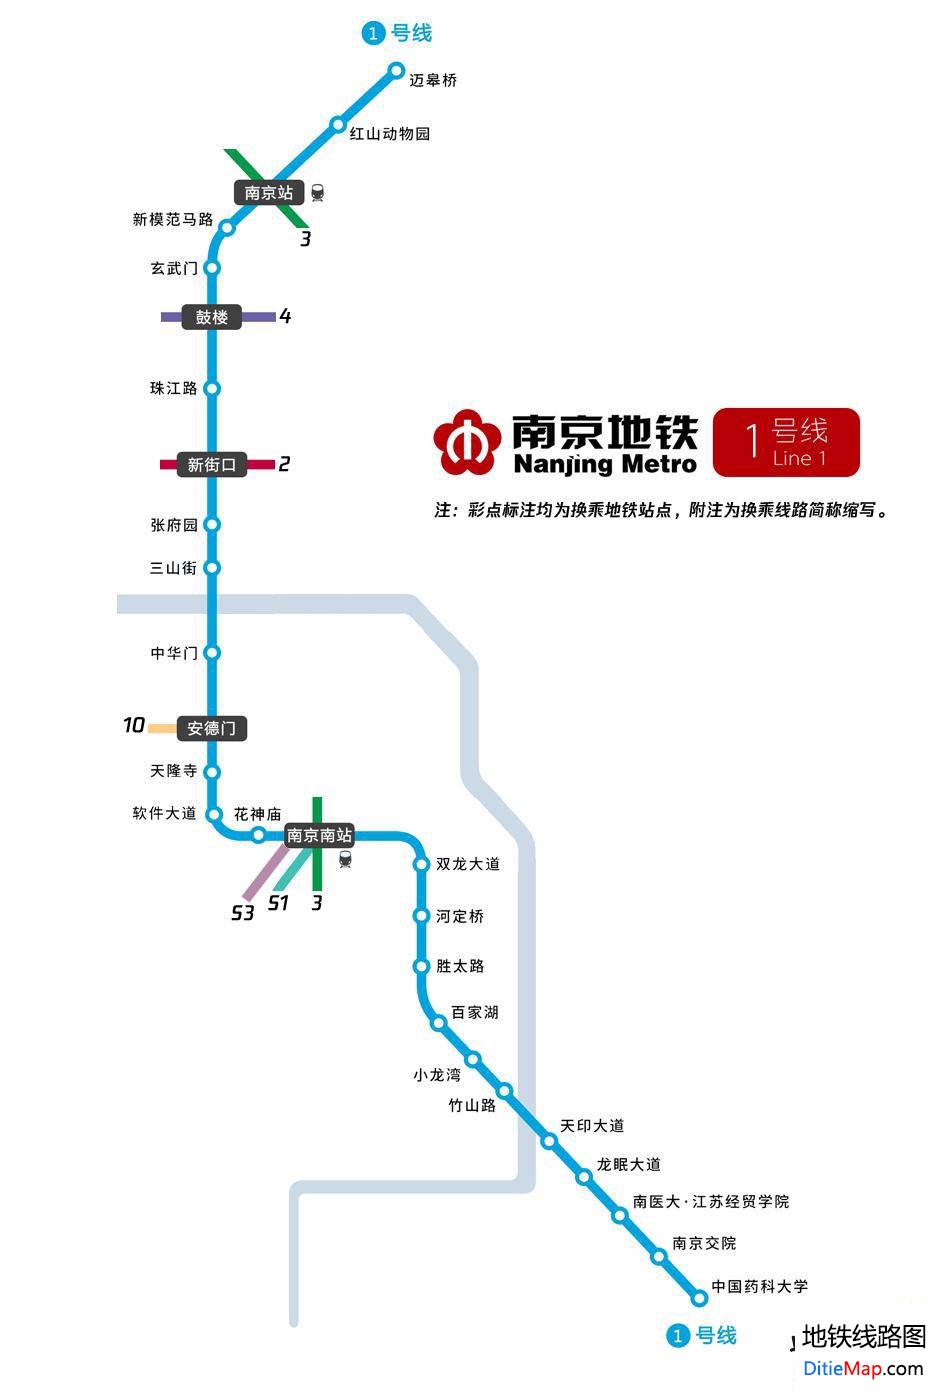 南京地铁1号线线路图 运营时间票价站点 查询下载 南京地铁1号线查询 南京地铁1号线运营时间 南京地铁1号线线路图 南京地铁1号线 南京地铁一号线 南京地铁线路图  第2张